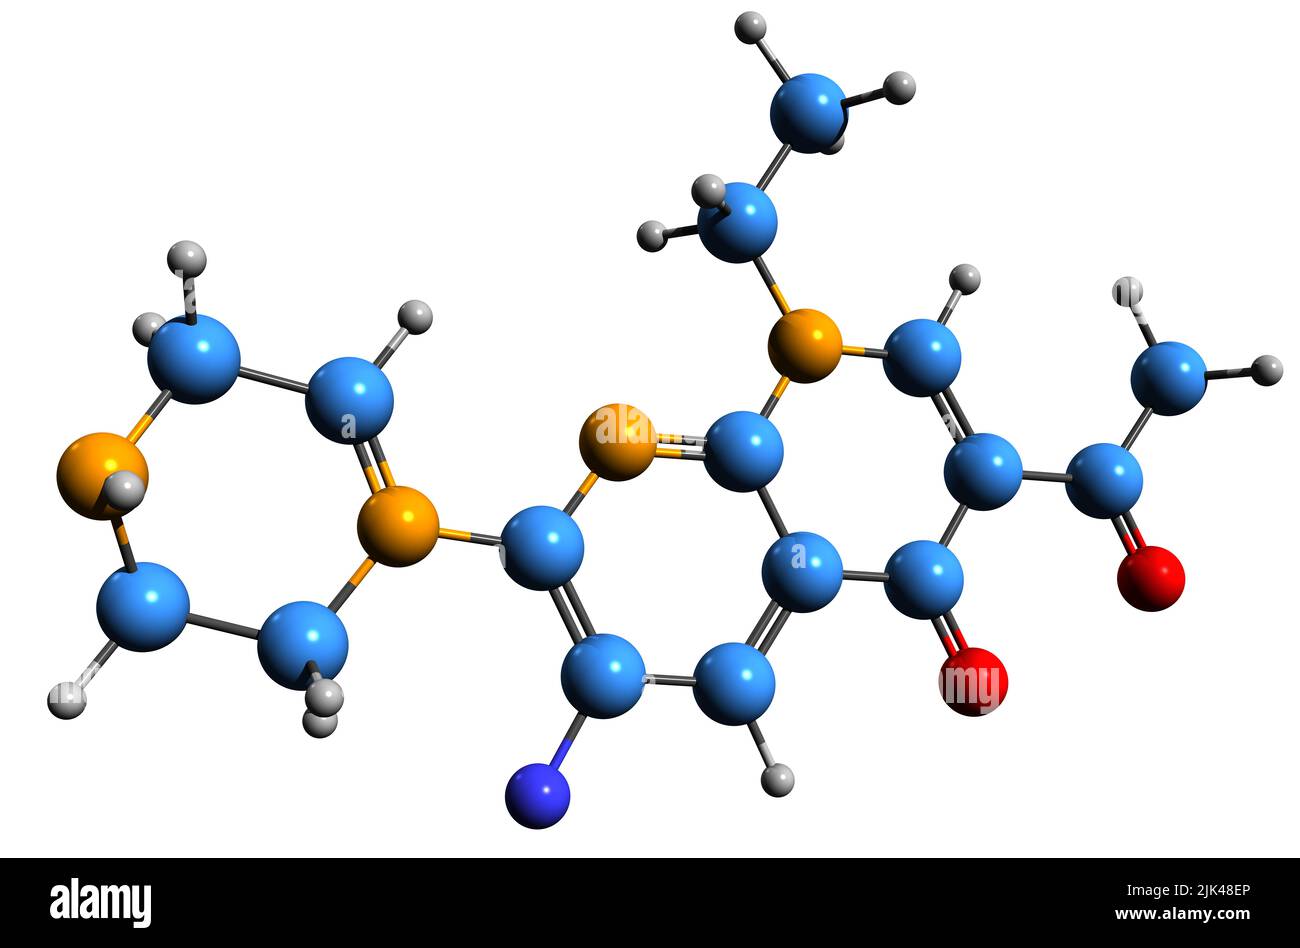 3D Bild der Skelettformel von Enoxacin - molekulare chemische Struktur des antibakteriellen Fluorchinolon-mittels auf weißem Hintergrund isoliert Stockfoto